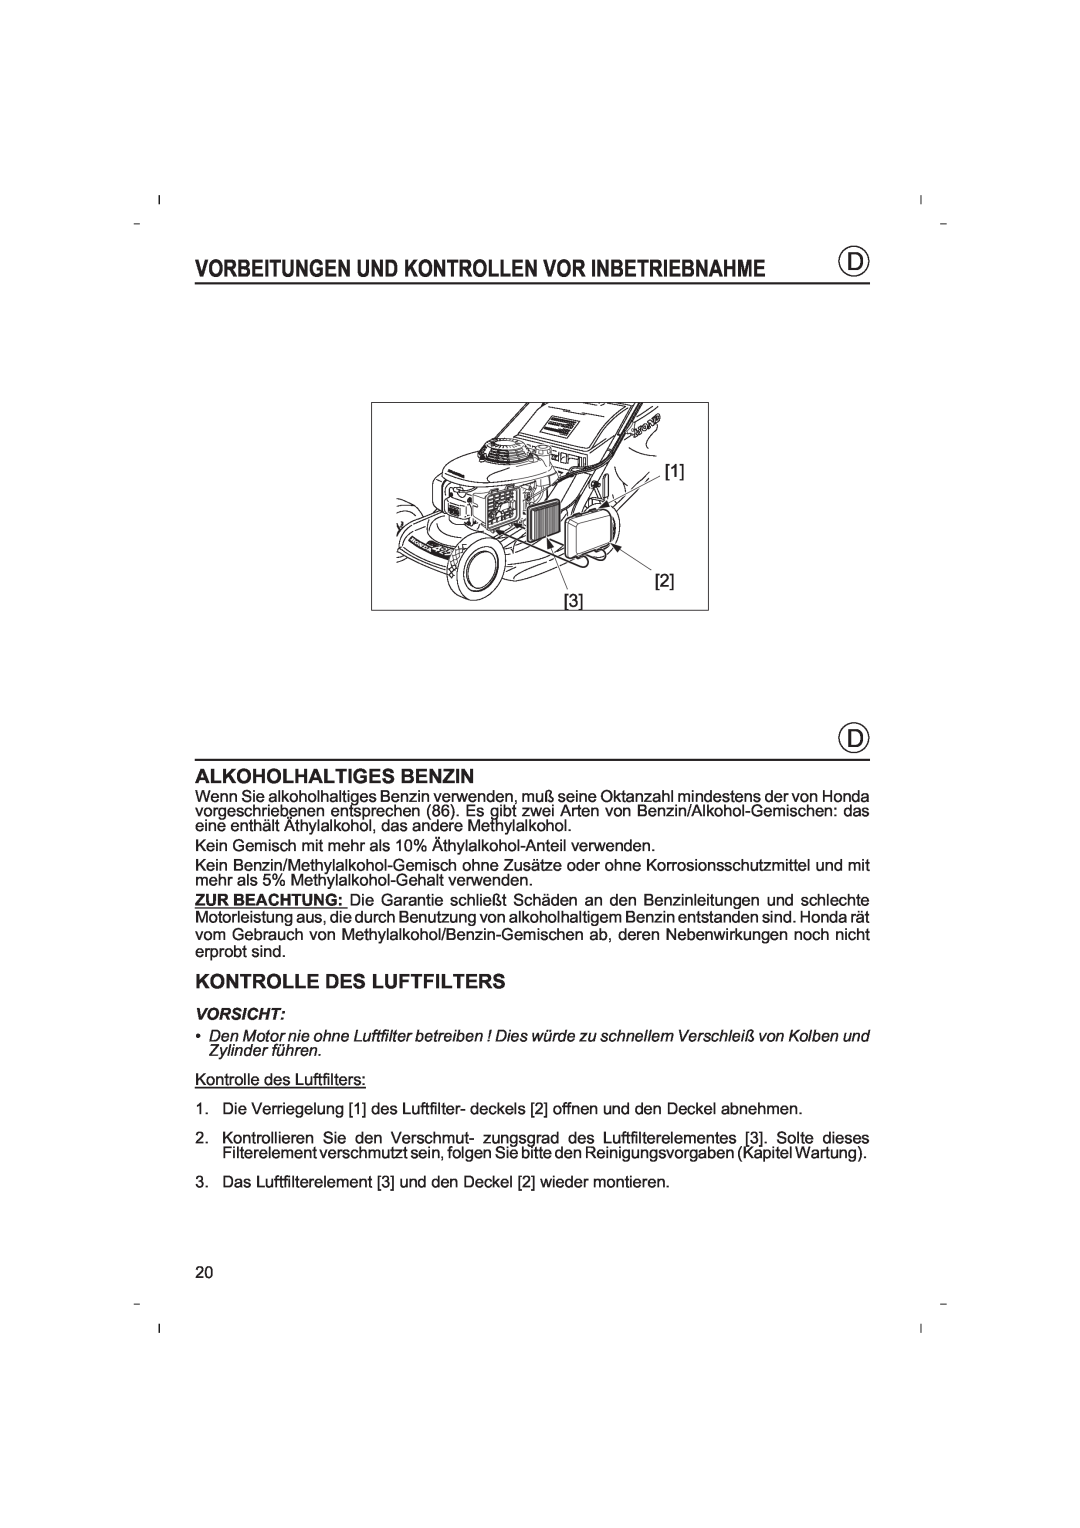 Honda Power Equipment HRB425C owner manual Alkoholhaltiges Benzin, Kontrolle Des Luftfilters 